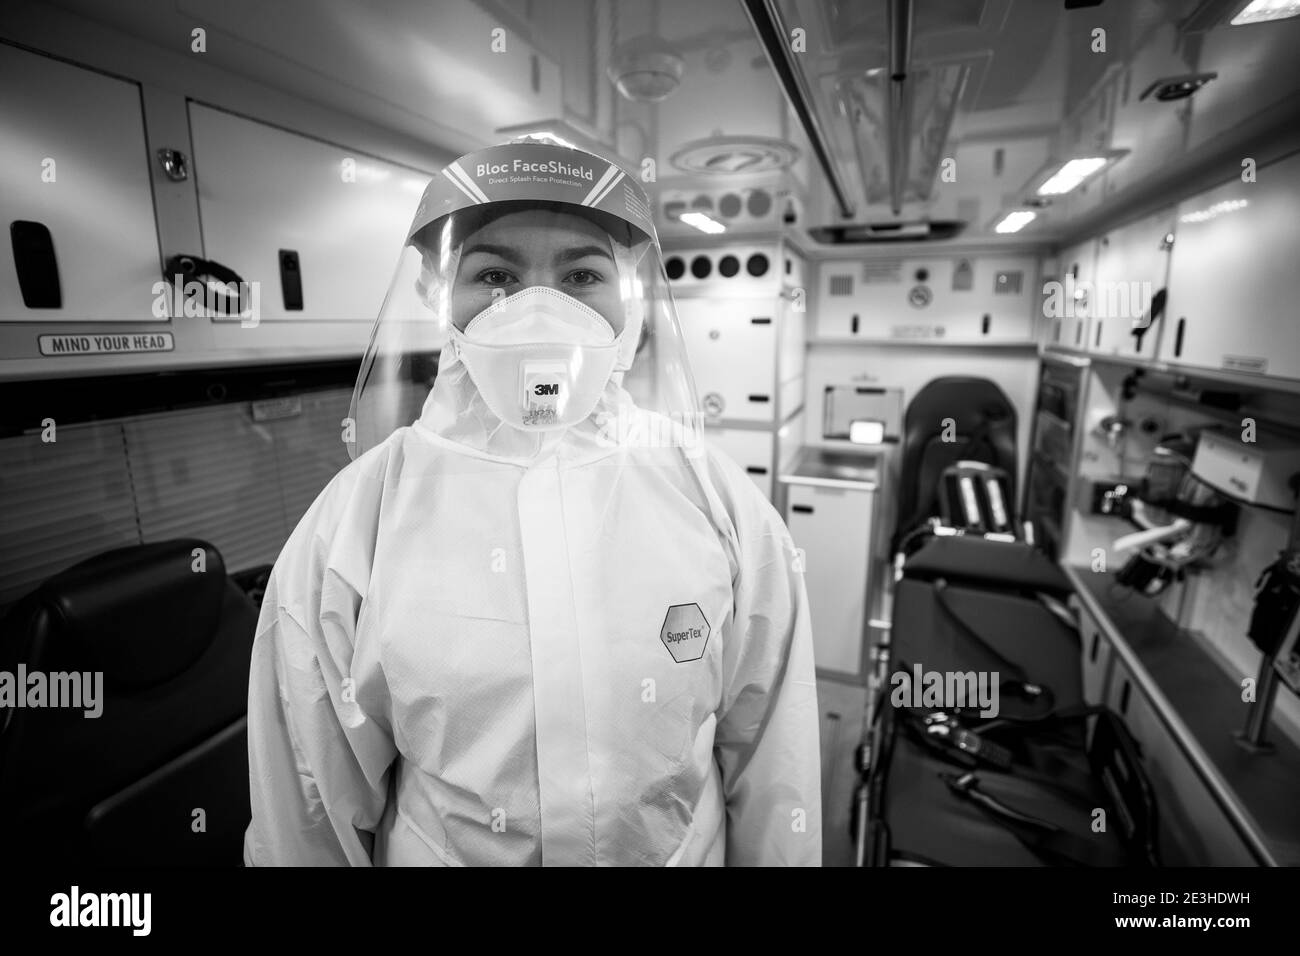 L'étudiante EMT Ruth Corscaden portant un EPI complet pose pendant son quart de travail pour le Northern Ireland Ambulance Service couvrant les hôpitaux du Northern Trust. Date de la photo: Lundi 18 janvier 2021. Banque D'Images